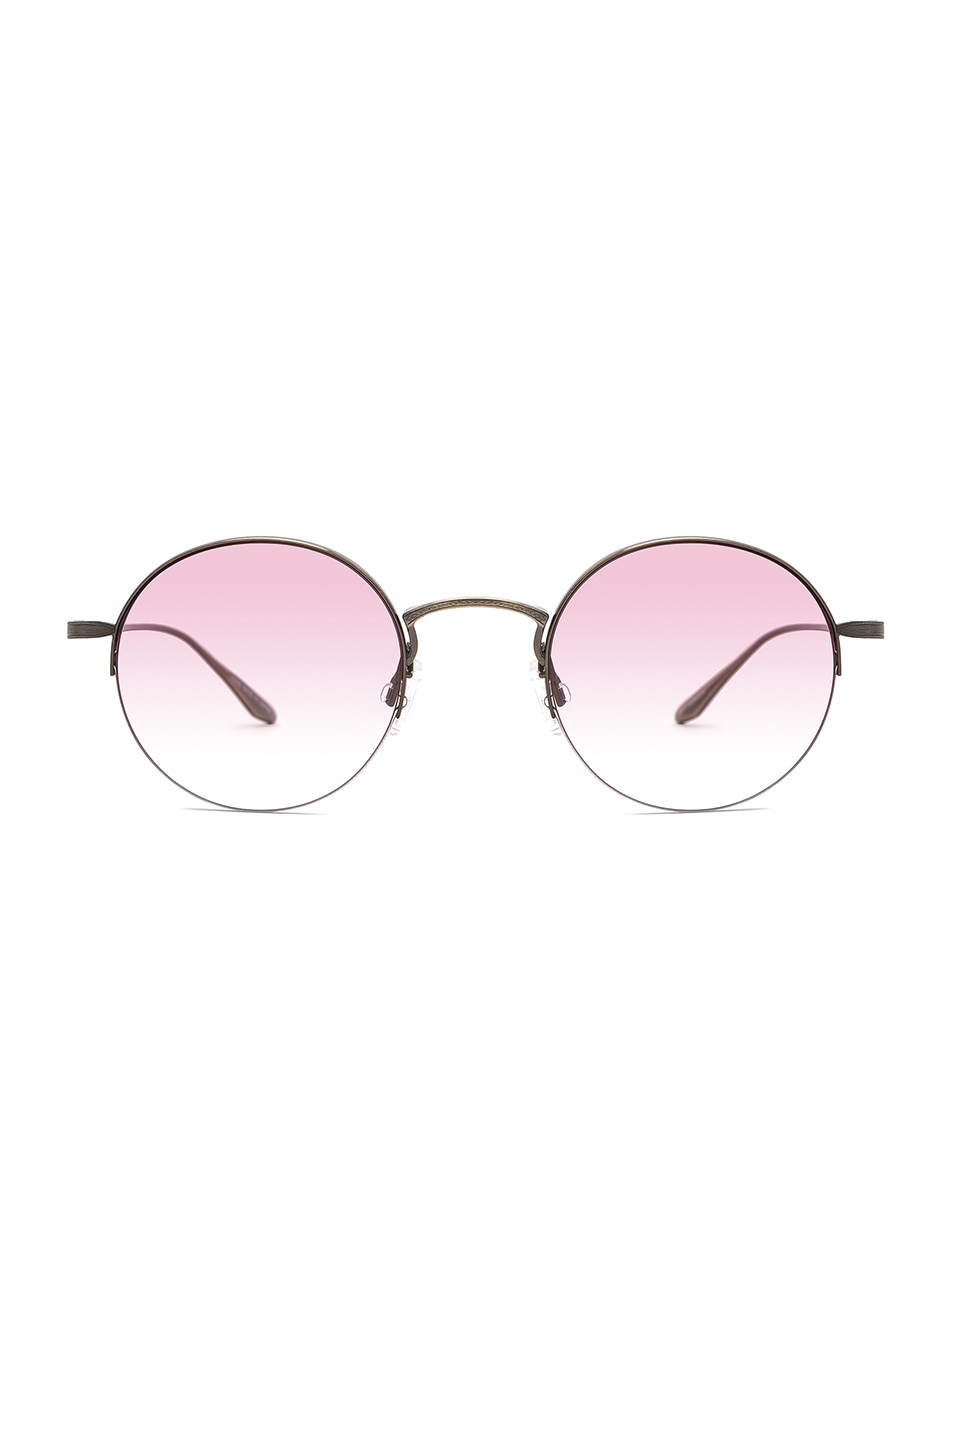 Image 1 of Barton Perreira Atticus Sunglasses in Antique Gold & Custom Campus Pink Lenses